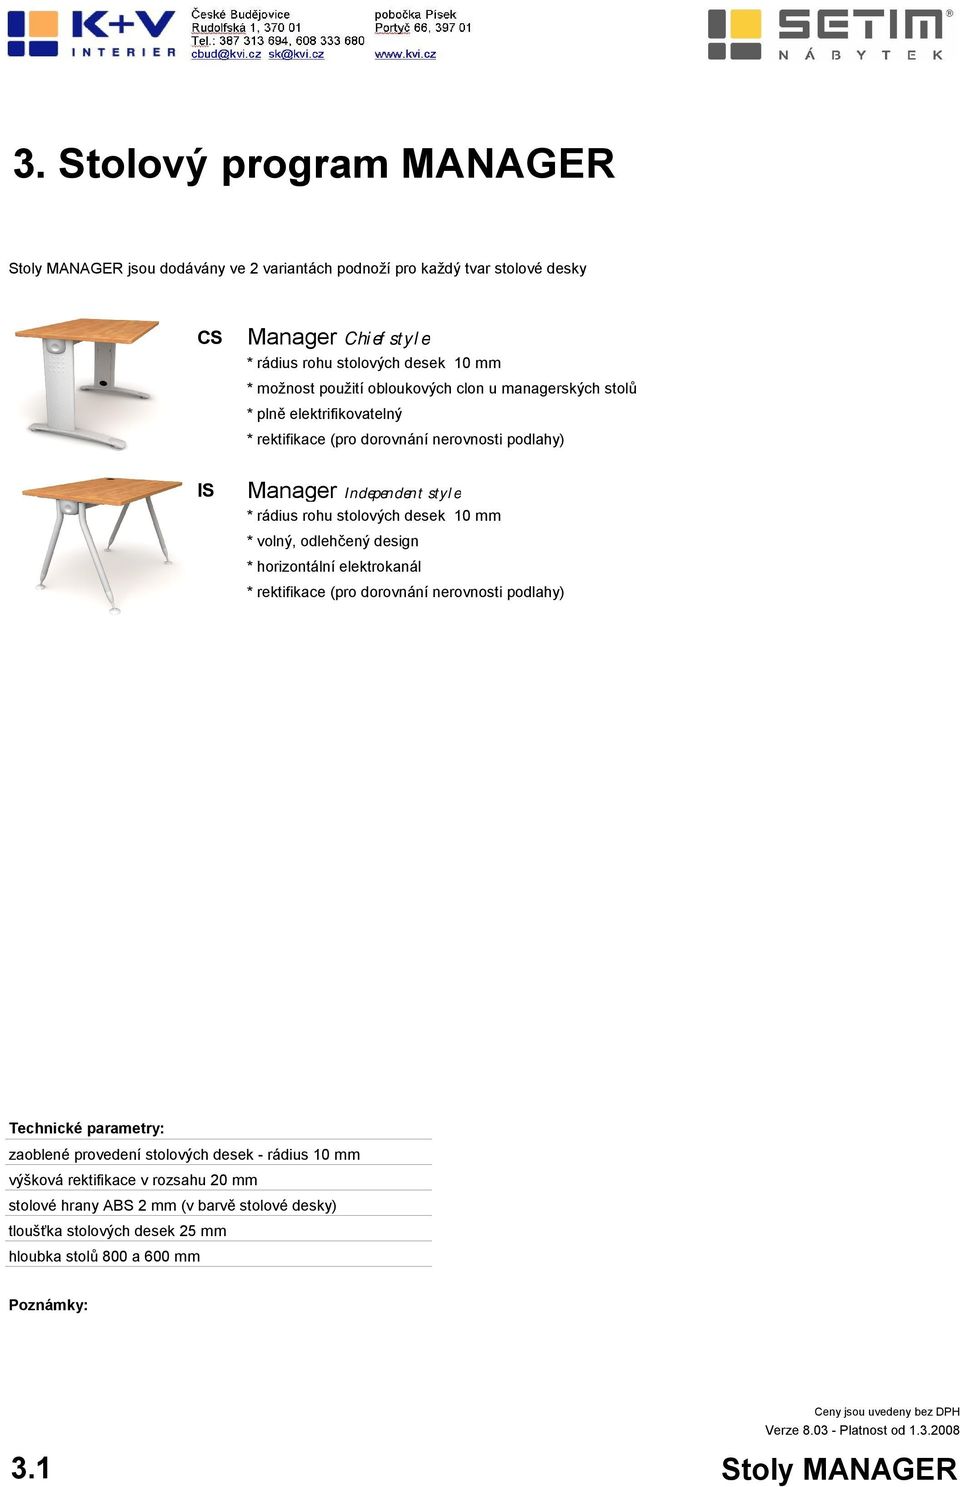 stolových desek 10 mm * volný, odlehčený design * horizontální elektrokanál * rektifikace (pro dorovnání nerovnosti podlahy) Technické parametry: zaoblené provedení